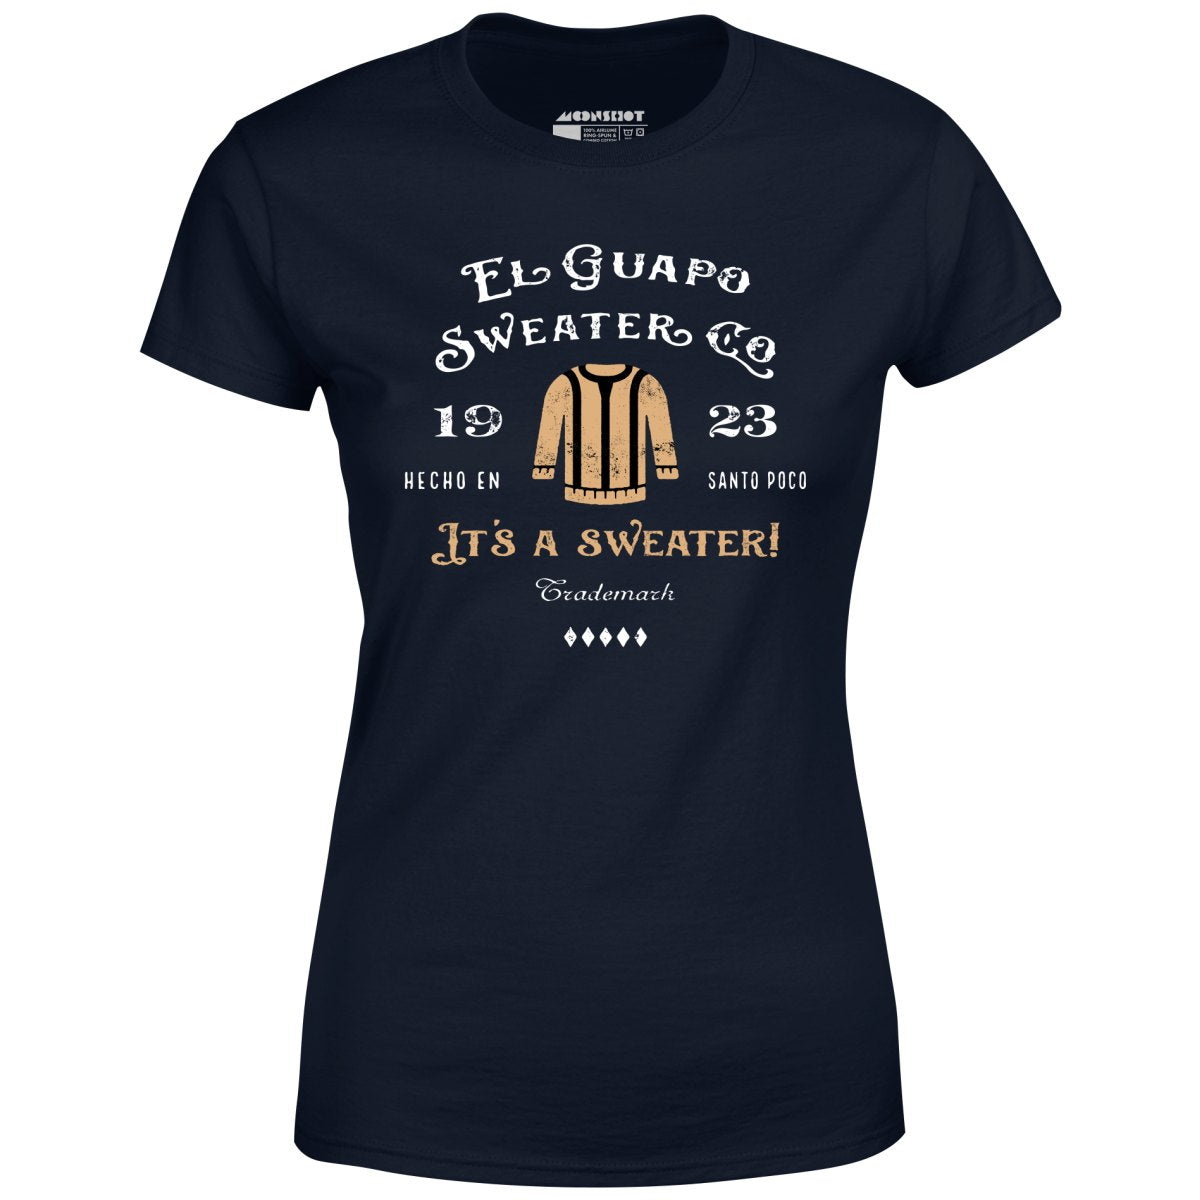 El Guapo Sweater Co. - Women's T-Shirt